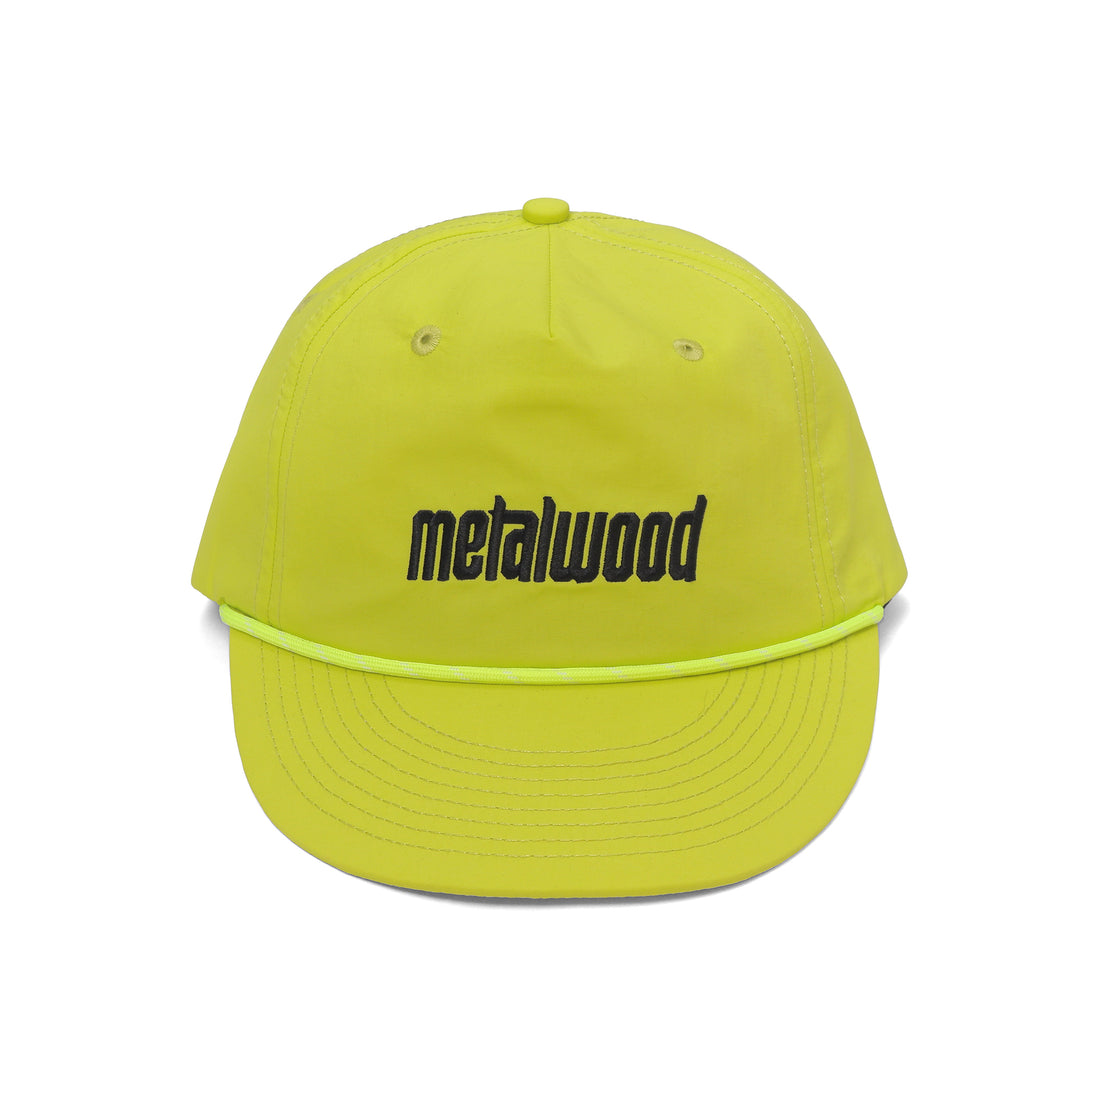 METALWOOD - METAL LOGO 5-PANEL ROPE HAT - HI-VIS